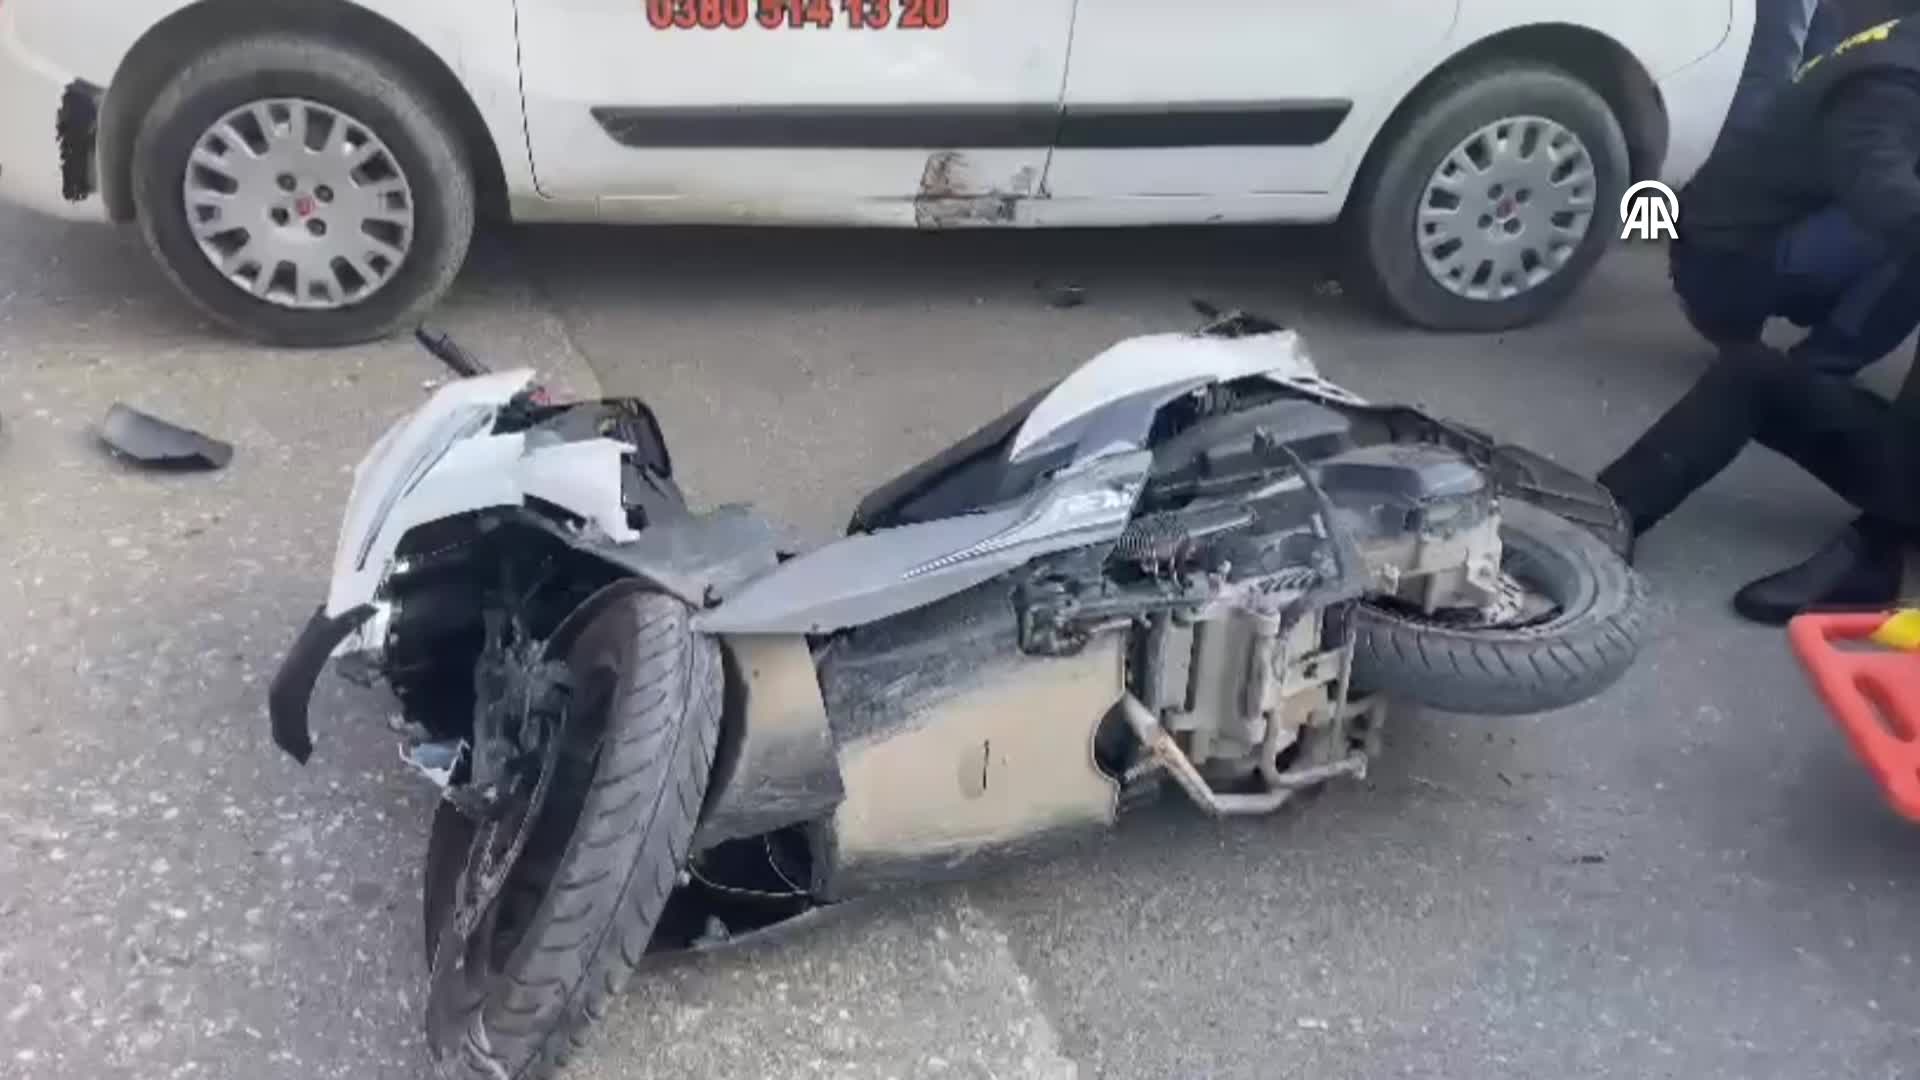 Düzce’de park halindeki otomobile çarpan motosikletin sürücüsü ağır yaralandı